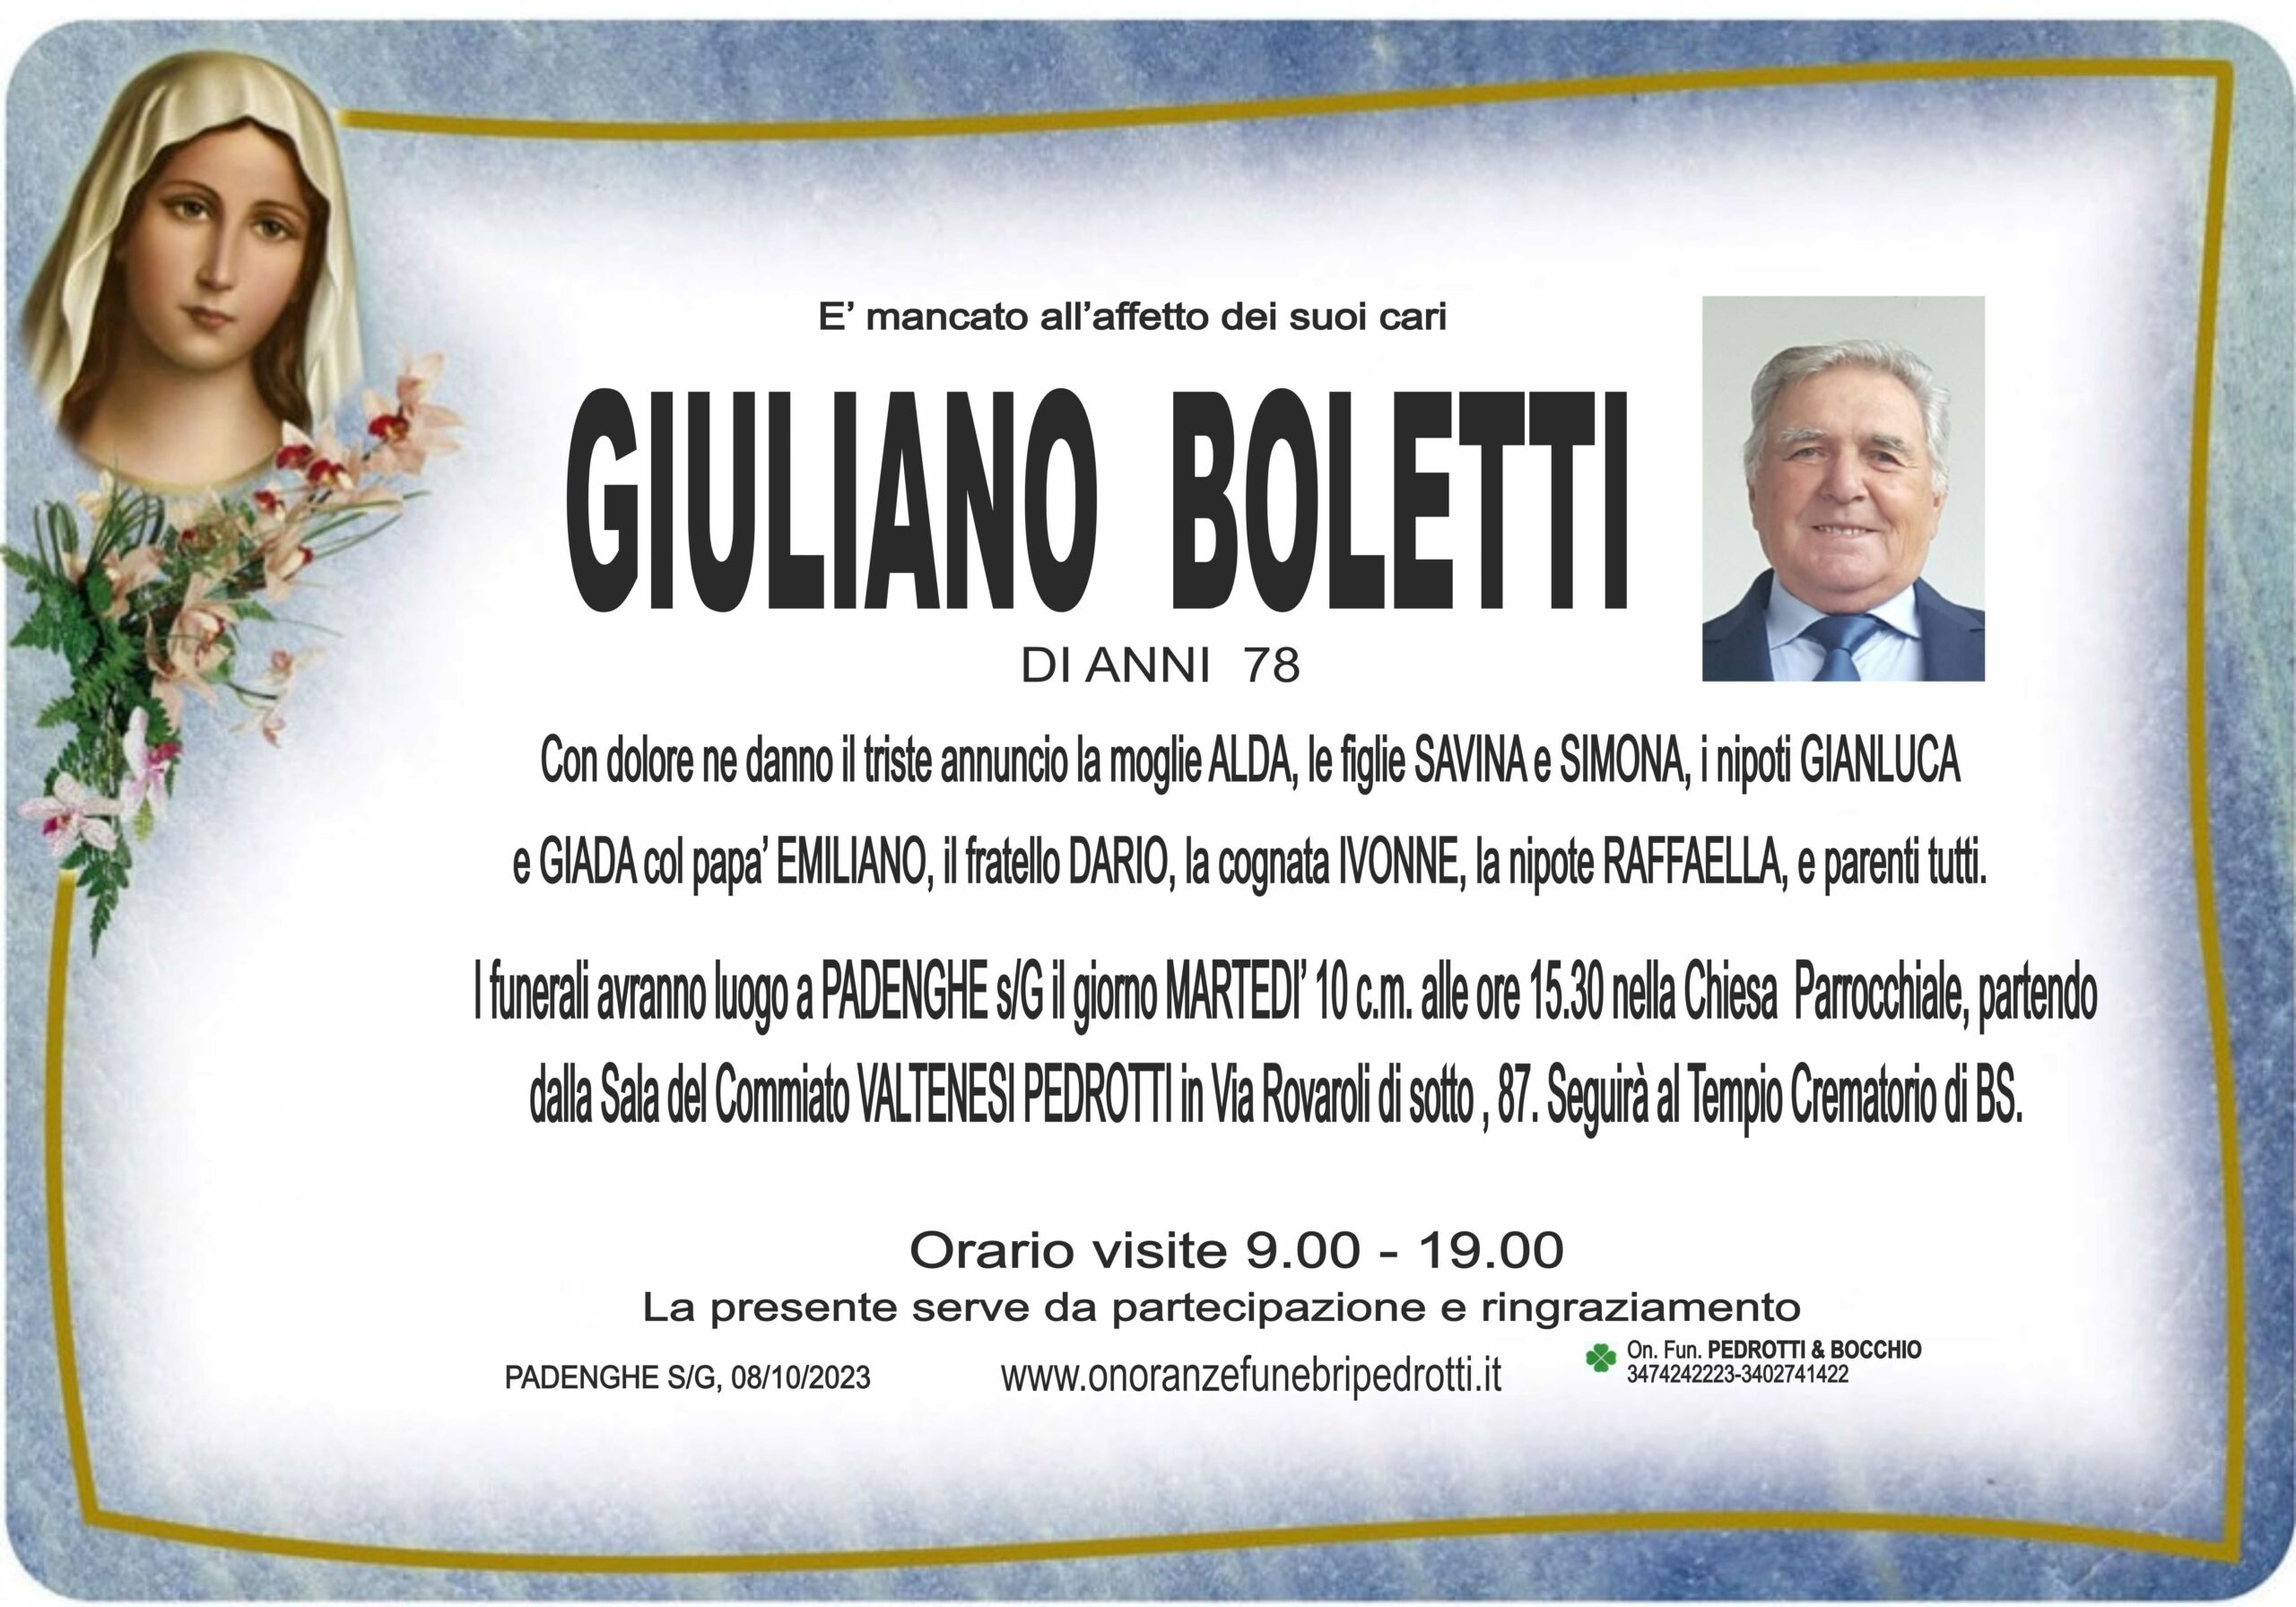 Al momento stai visualizzando Giuliano Boletti